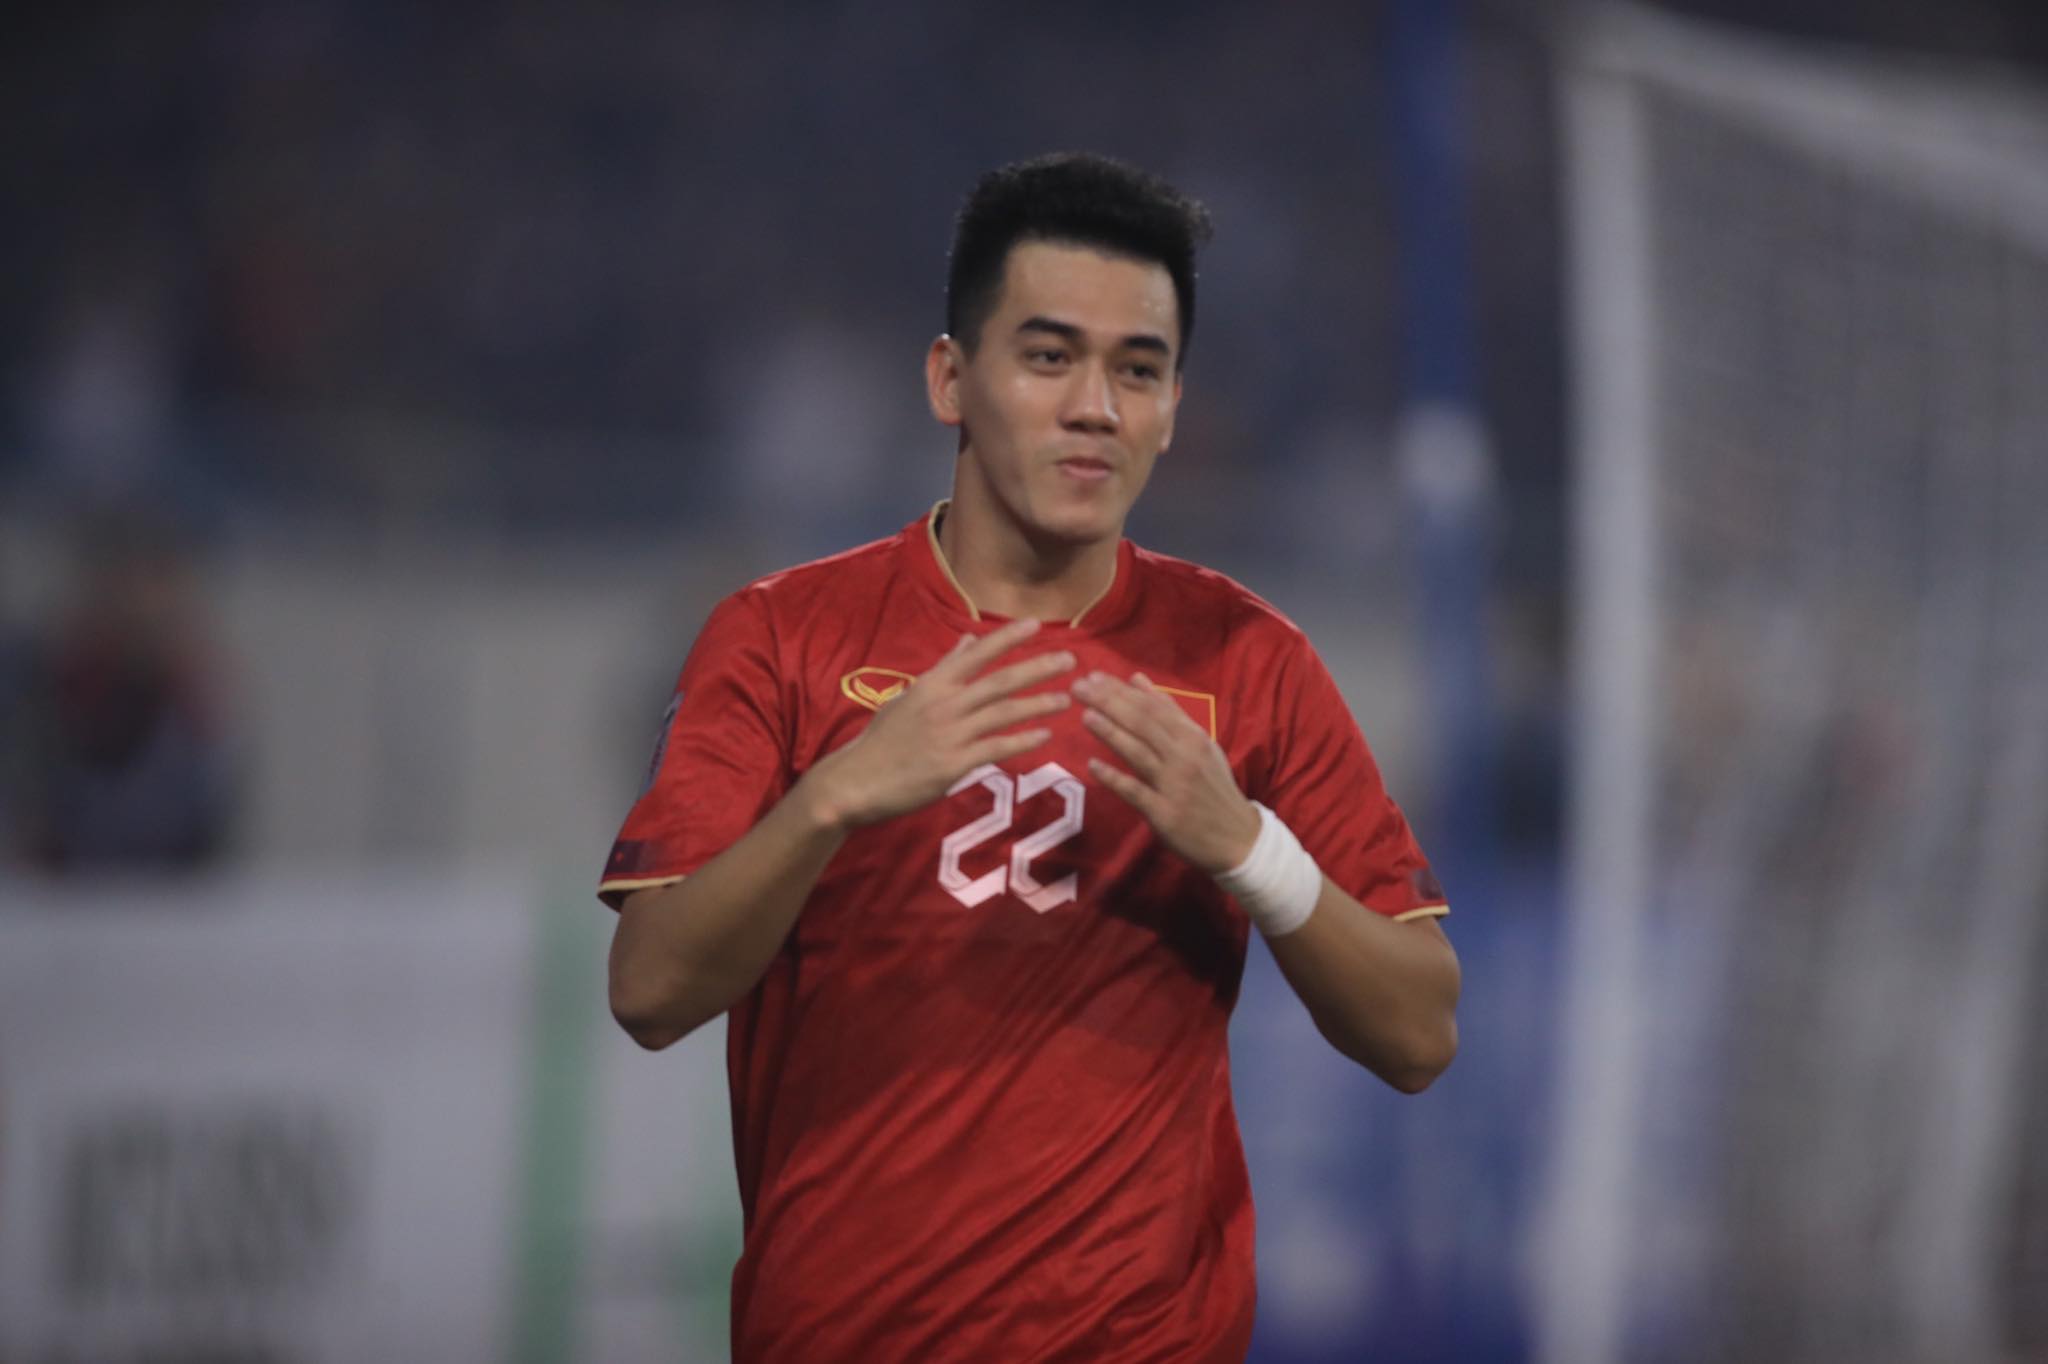 Tiến Linh được bầu chọn là cầu thủ xuất sắc nhất trận bán kết lượt về giữa Việt Nam và Indonesia - Ảnh: Minh Tuấn 